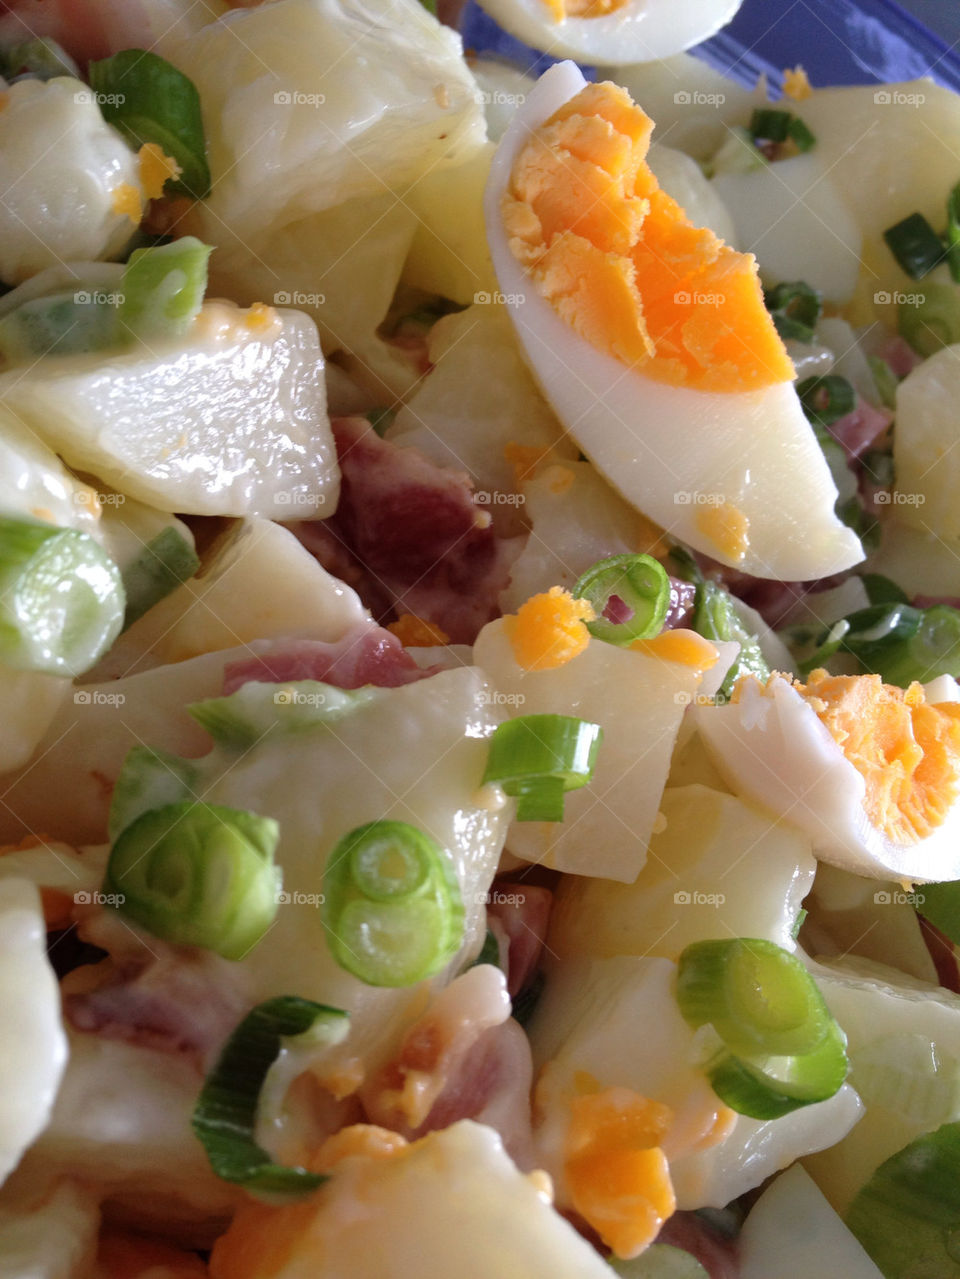 and salad egg potato by iamschmoo